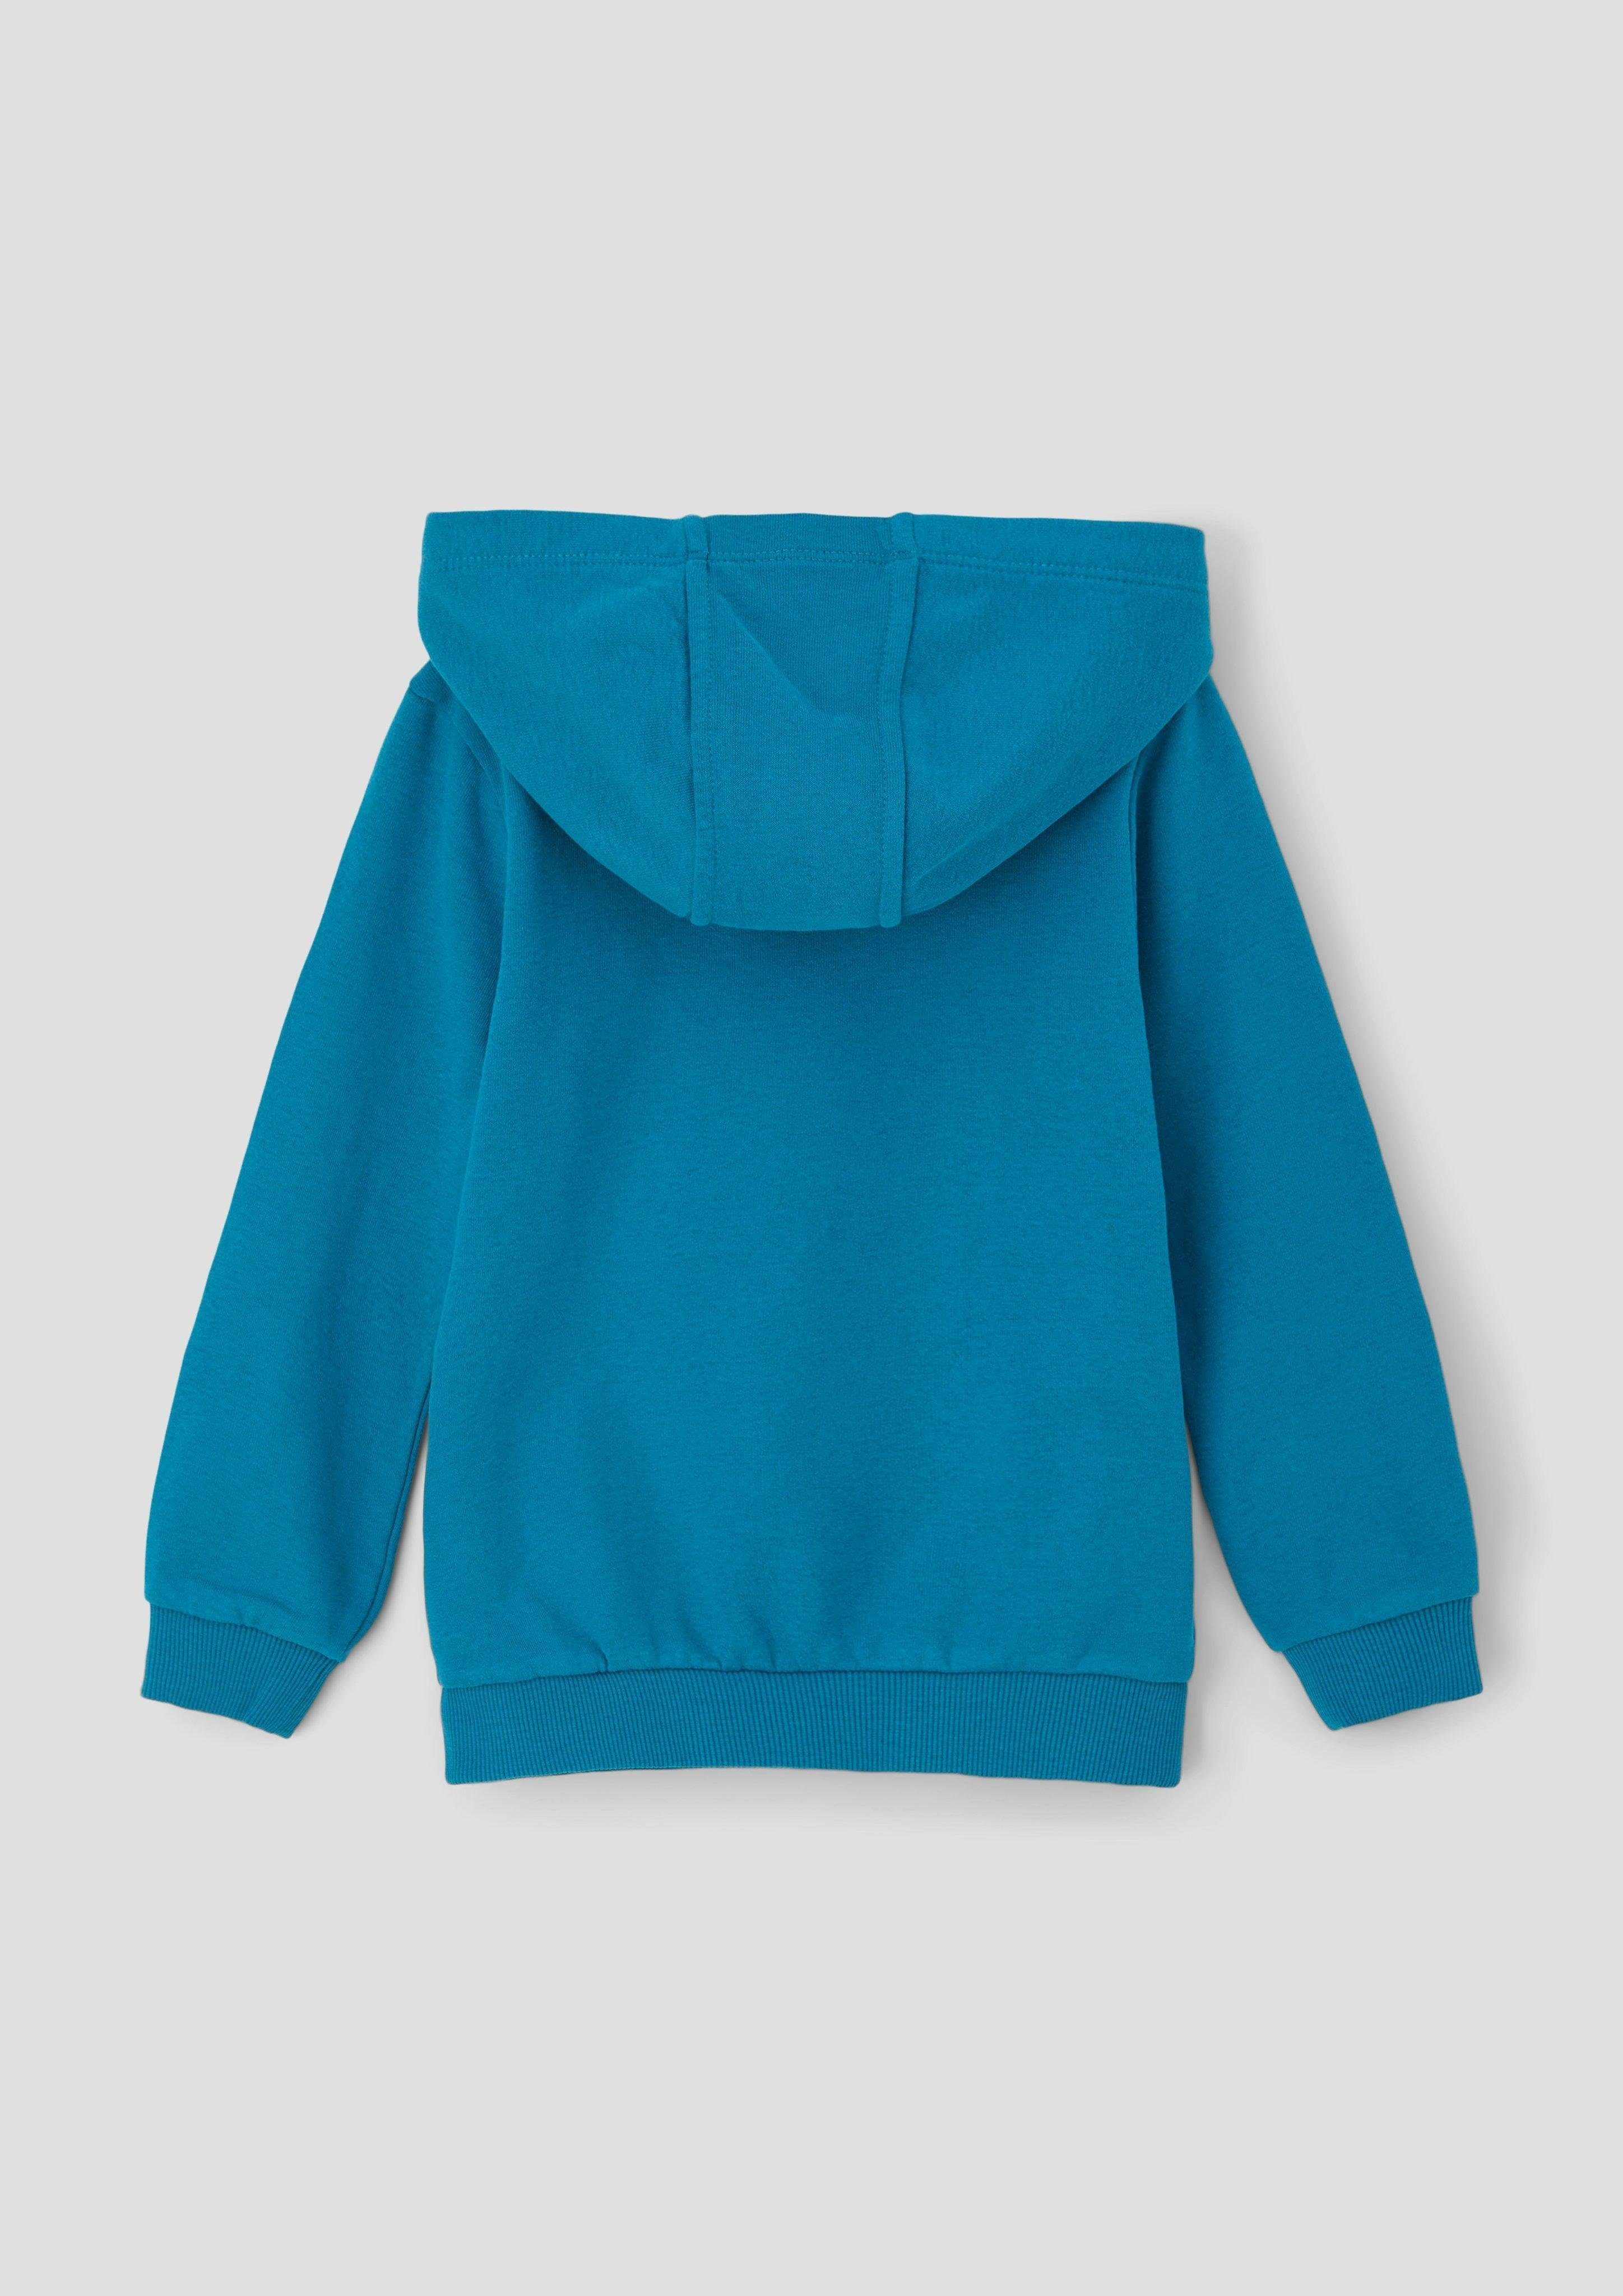 s.Oliver mit Kapuzensweater Sweatshirt Innenseite weicher azurblau